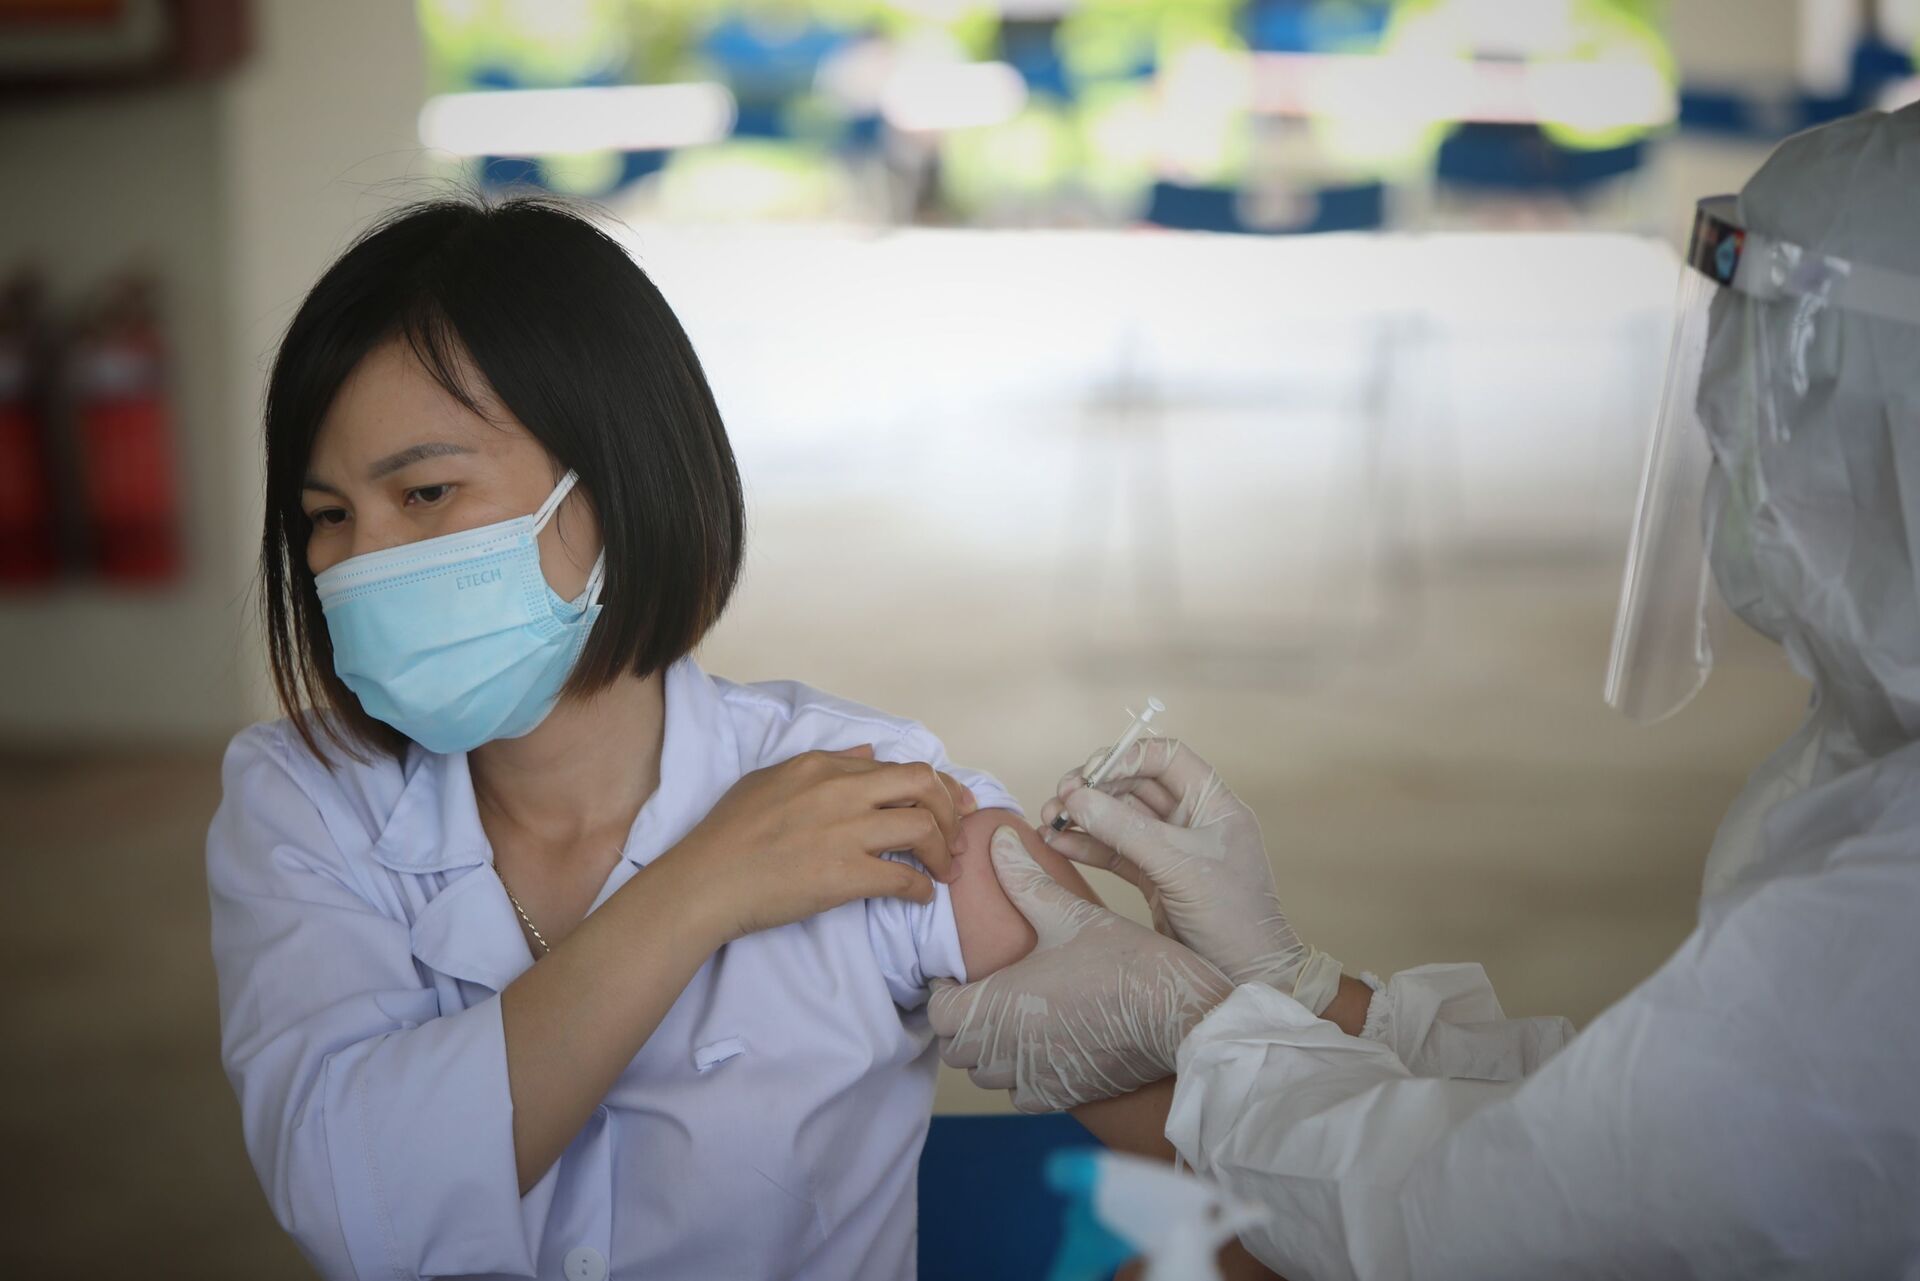 Việt Nam chính thức tiêm vaccine Covid-19 cho công nhân, bắt đầu từ Foxconn - Sputnik Việt Nam, 1920, 27.05.2021